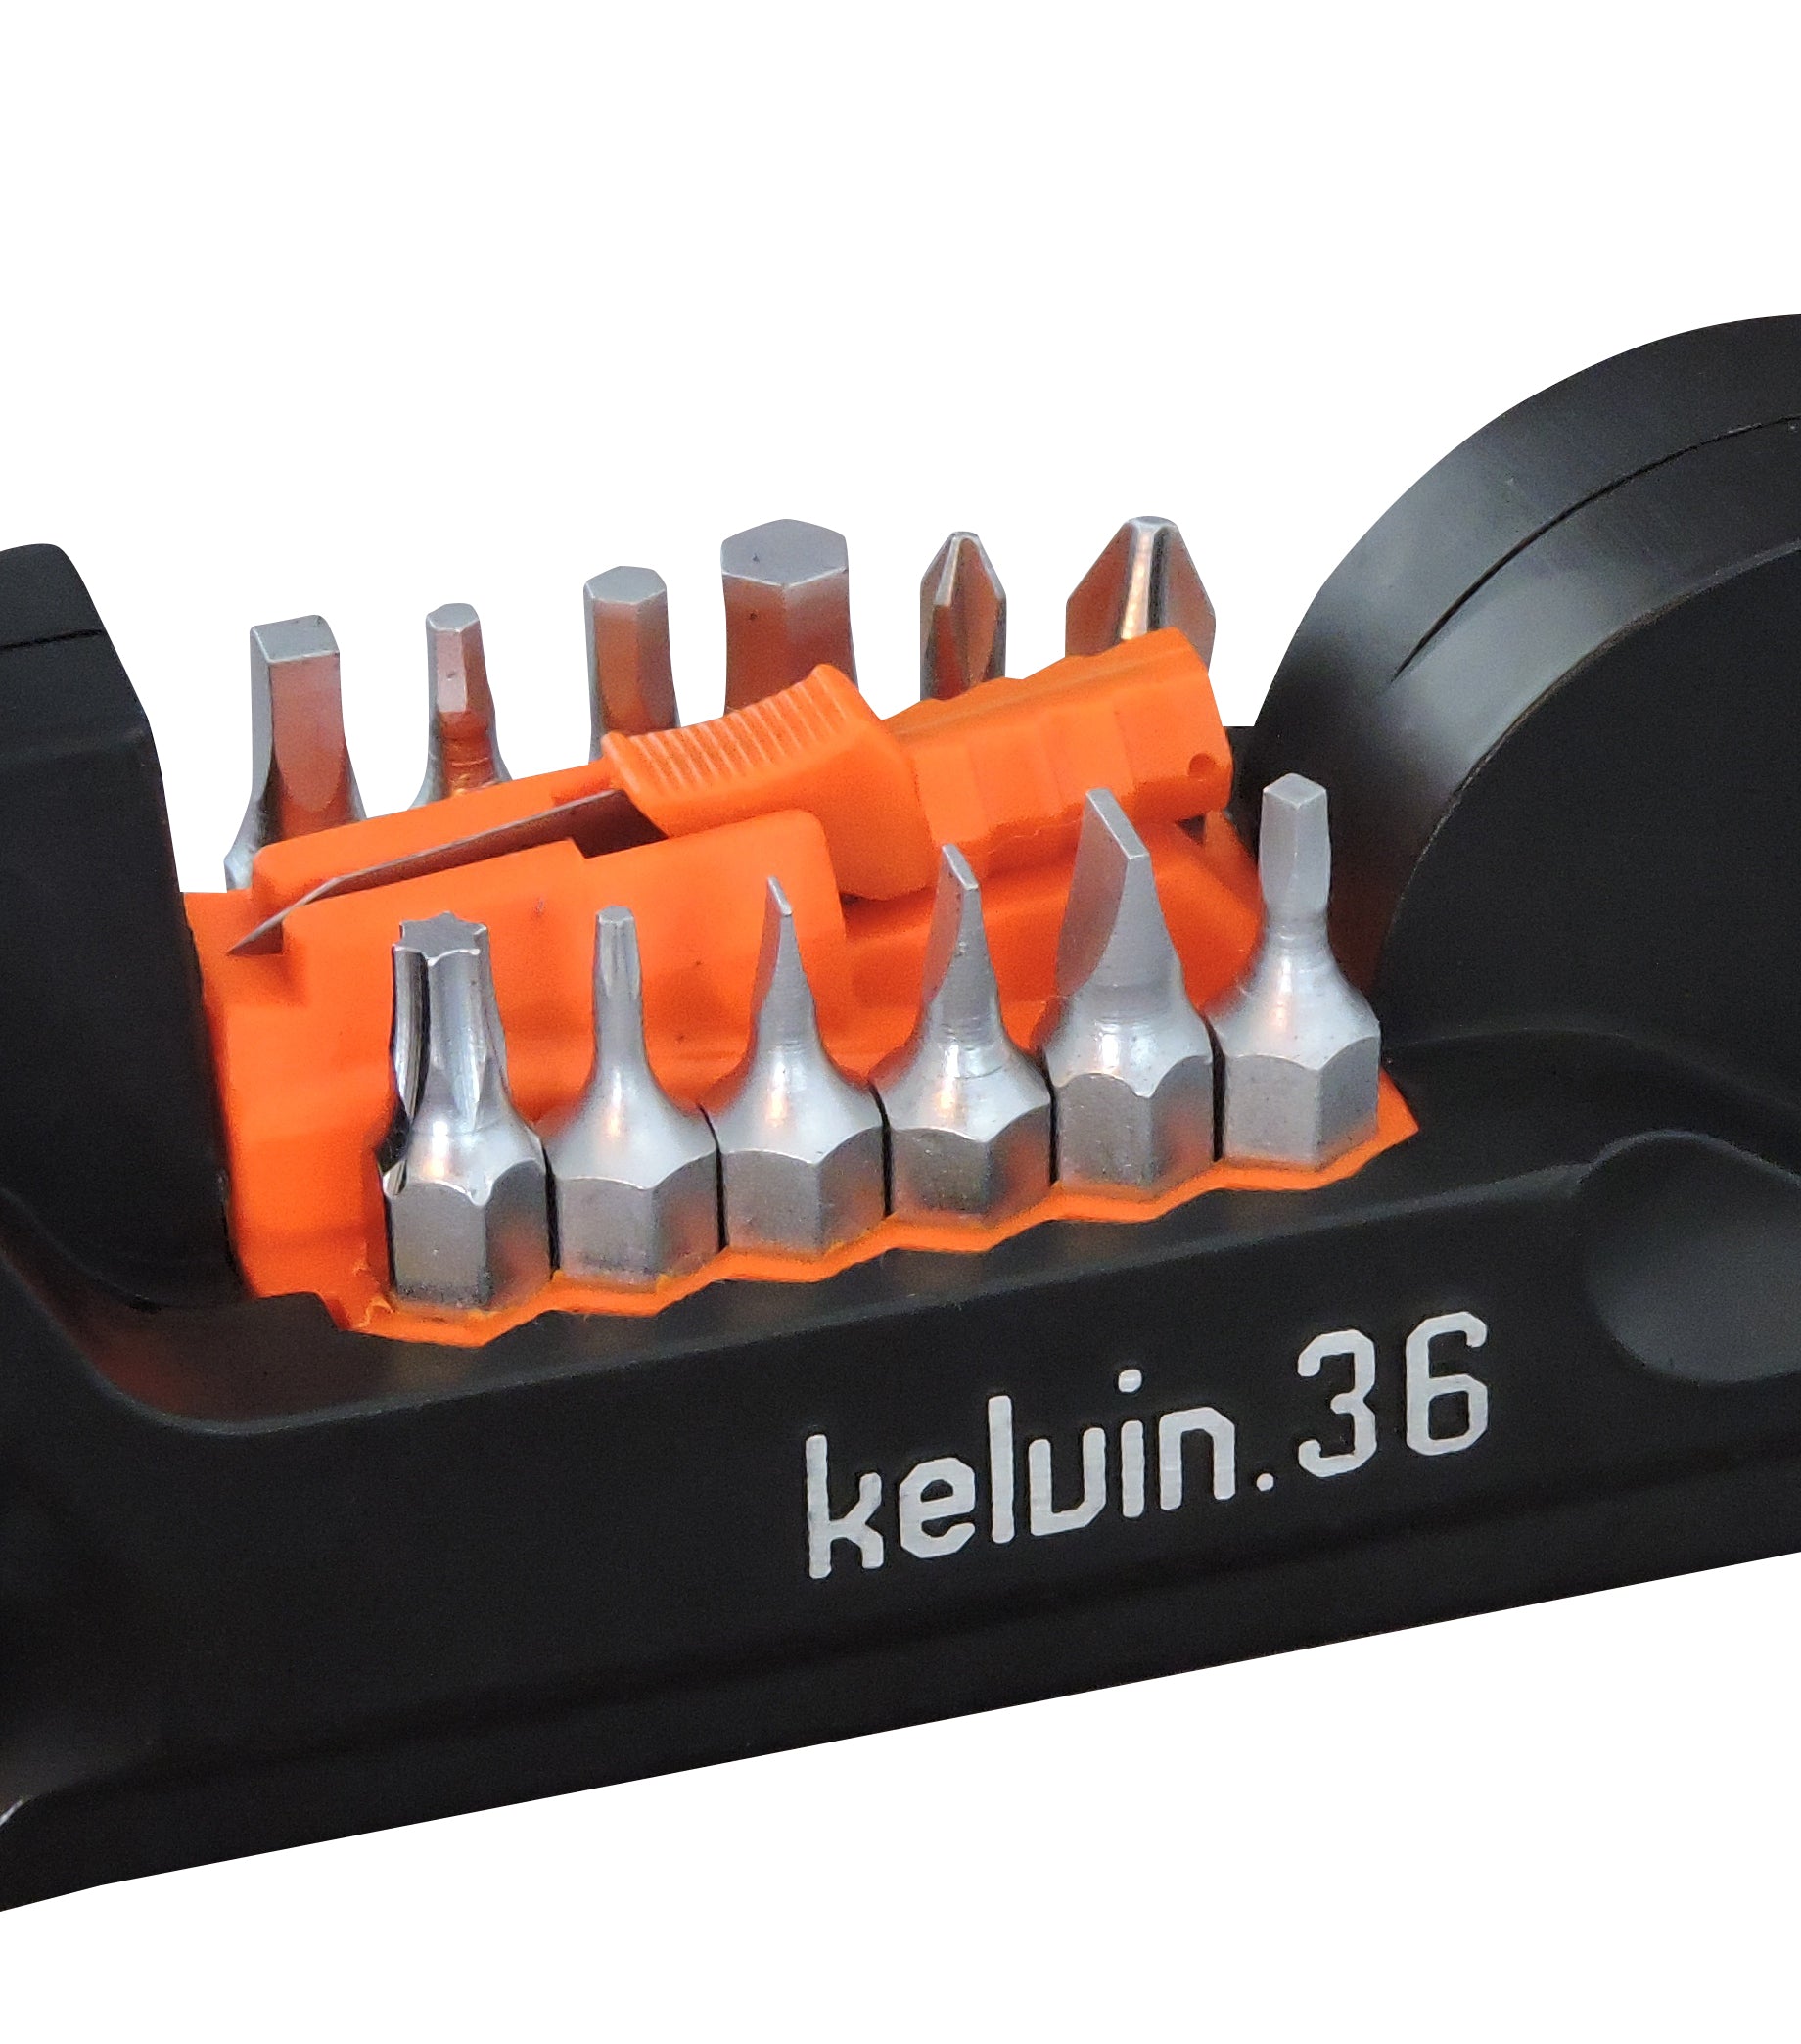 Kelvin 36 - The Ultimate Urban Multitool - Black